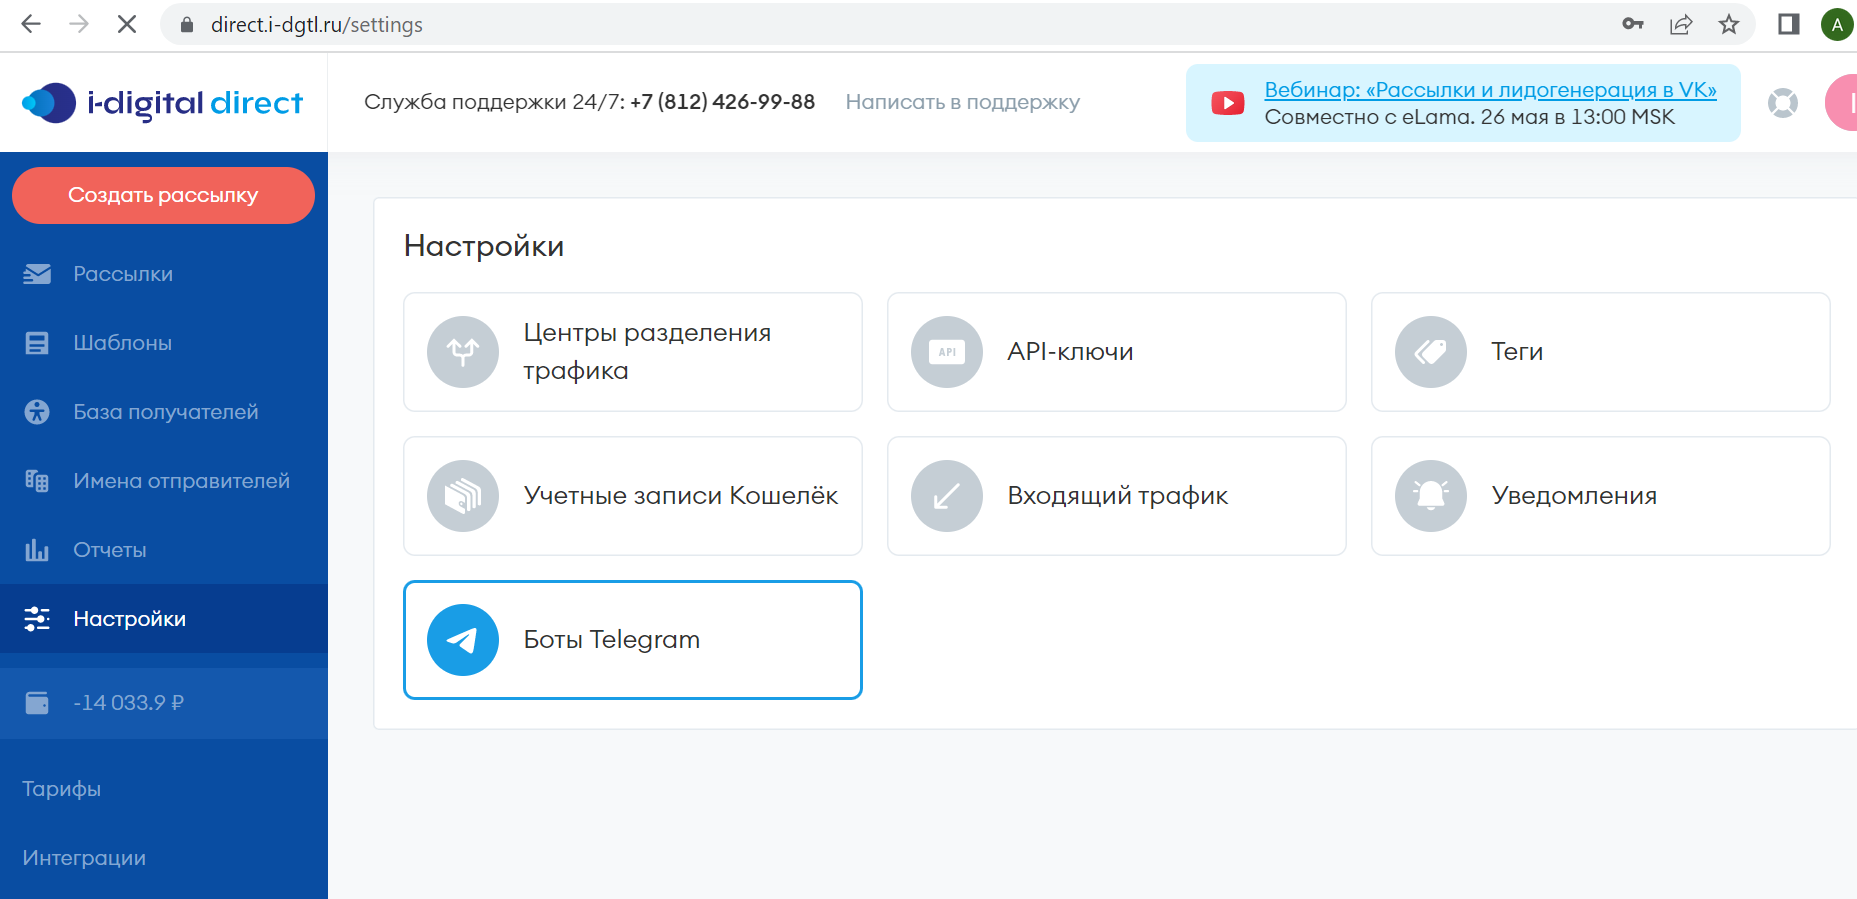 Боты Telegram в сервисе i-digital direct